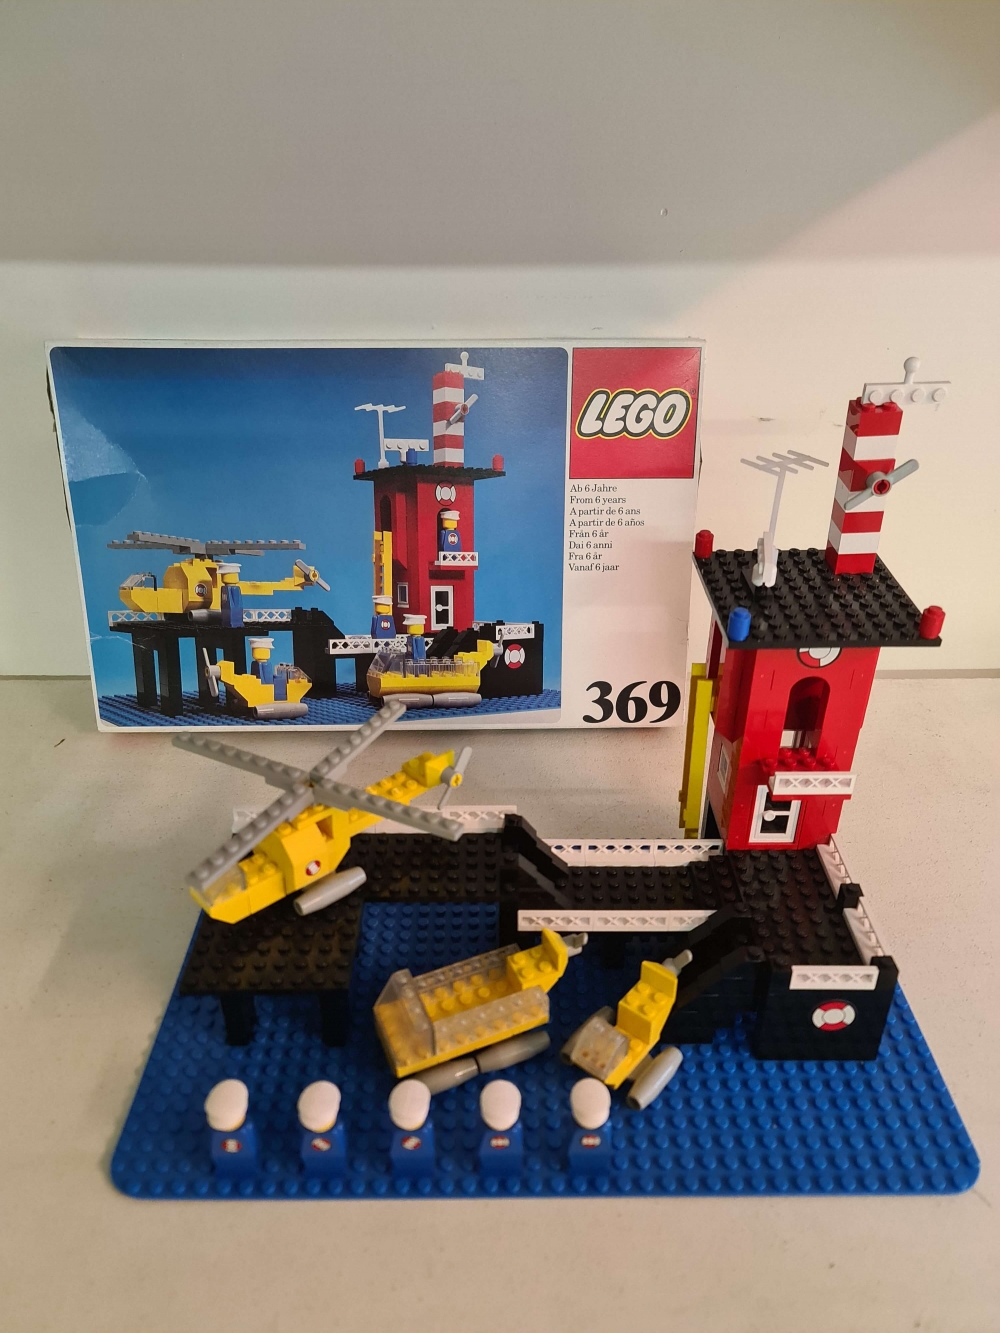 Sett 369 fra Lego Legoland serien.
Meget pent.
Komplett med manual og eske
